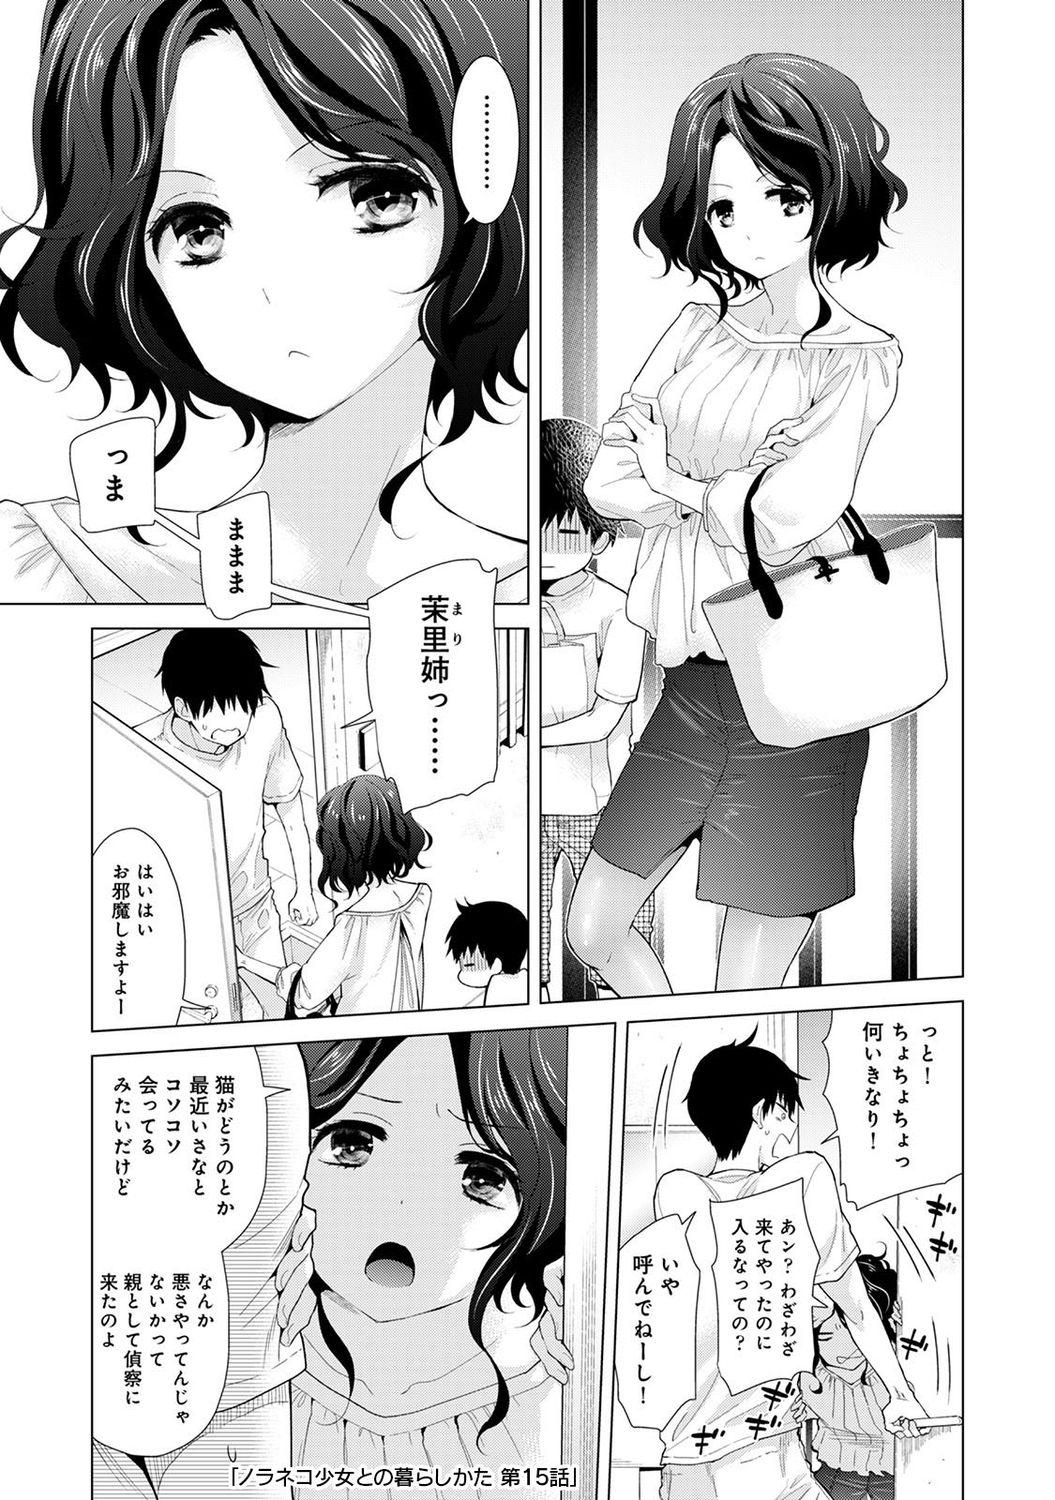 Noraneko Shoujo to no Kurashikata 2 - How to Live with a Noraneko Girl. 164